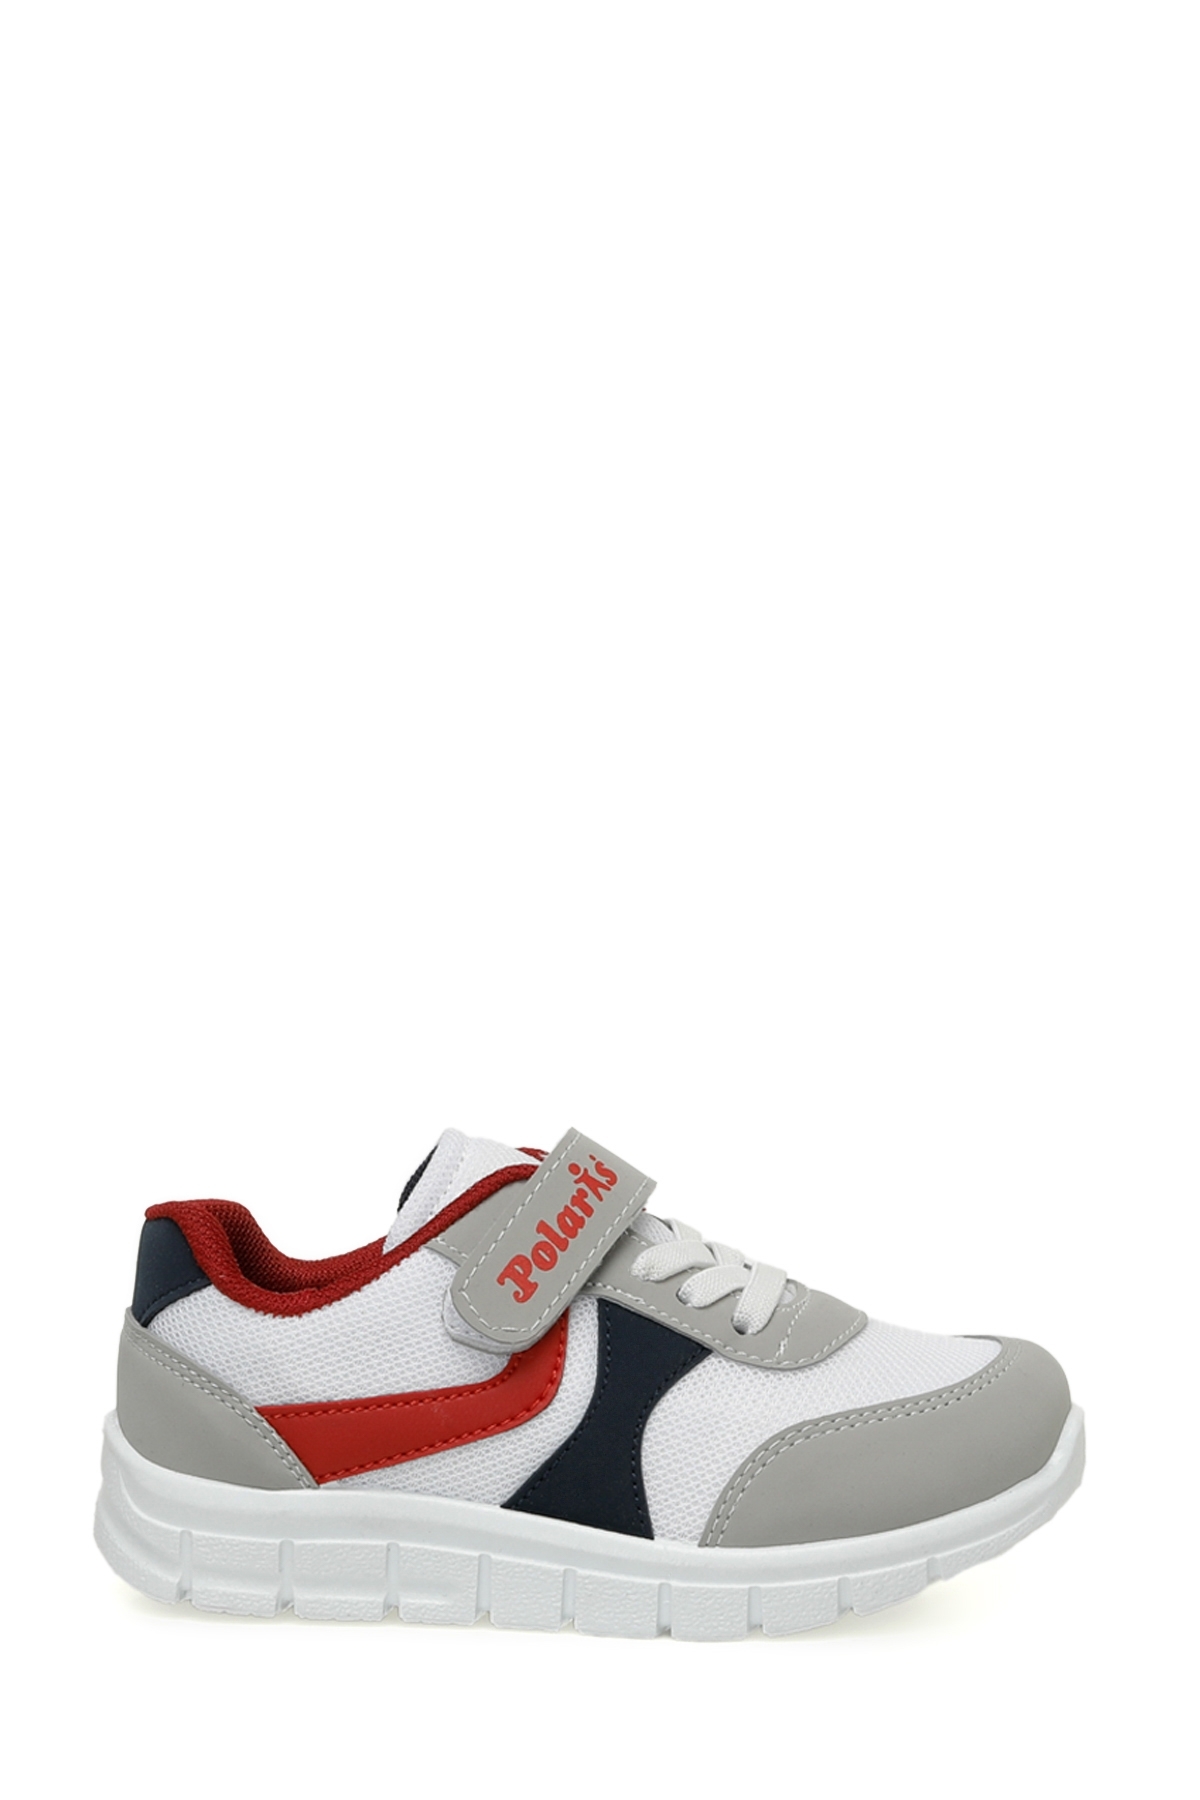 Polaris MODRY 4FX Boys White Sneaker